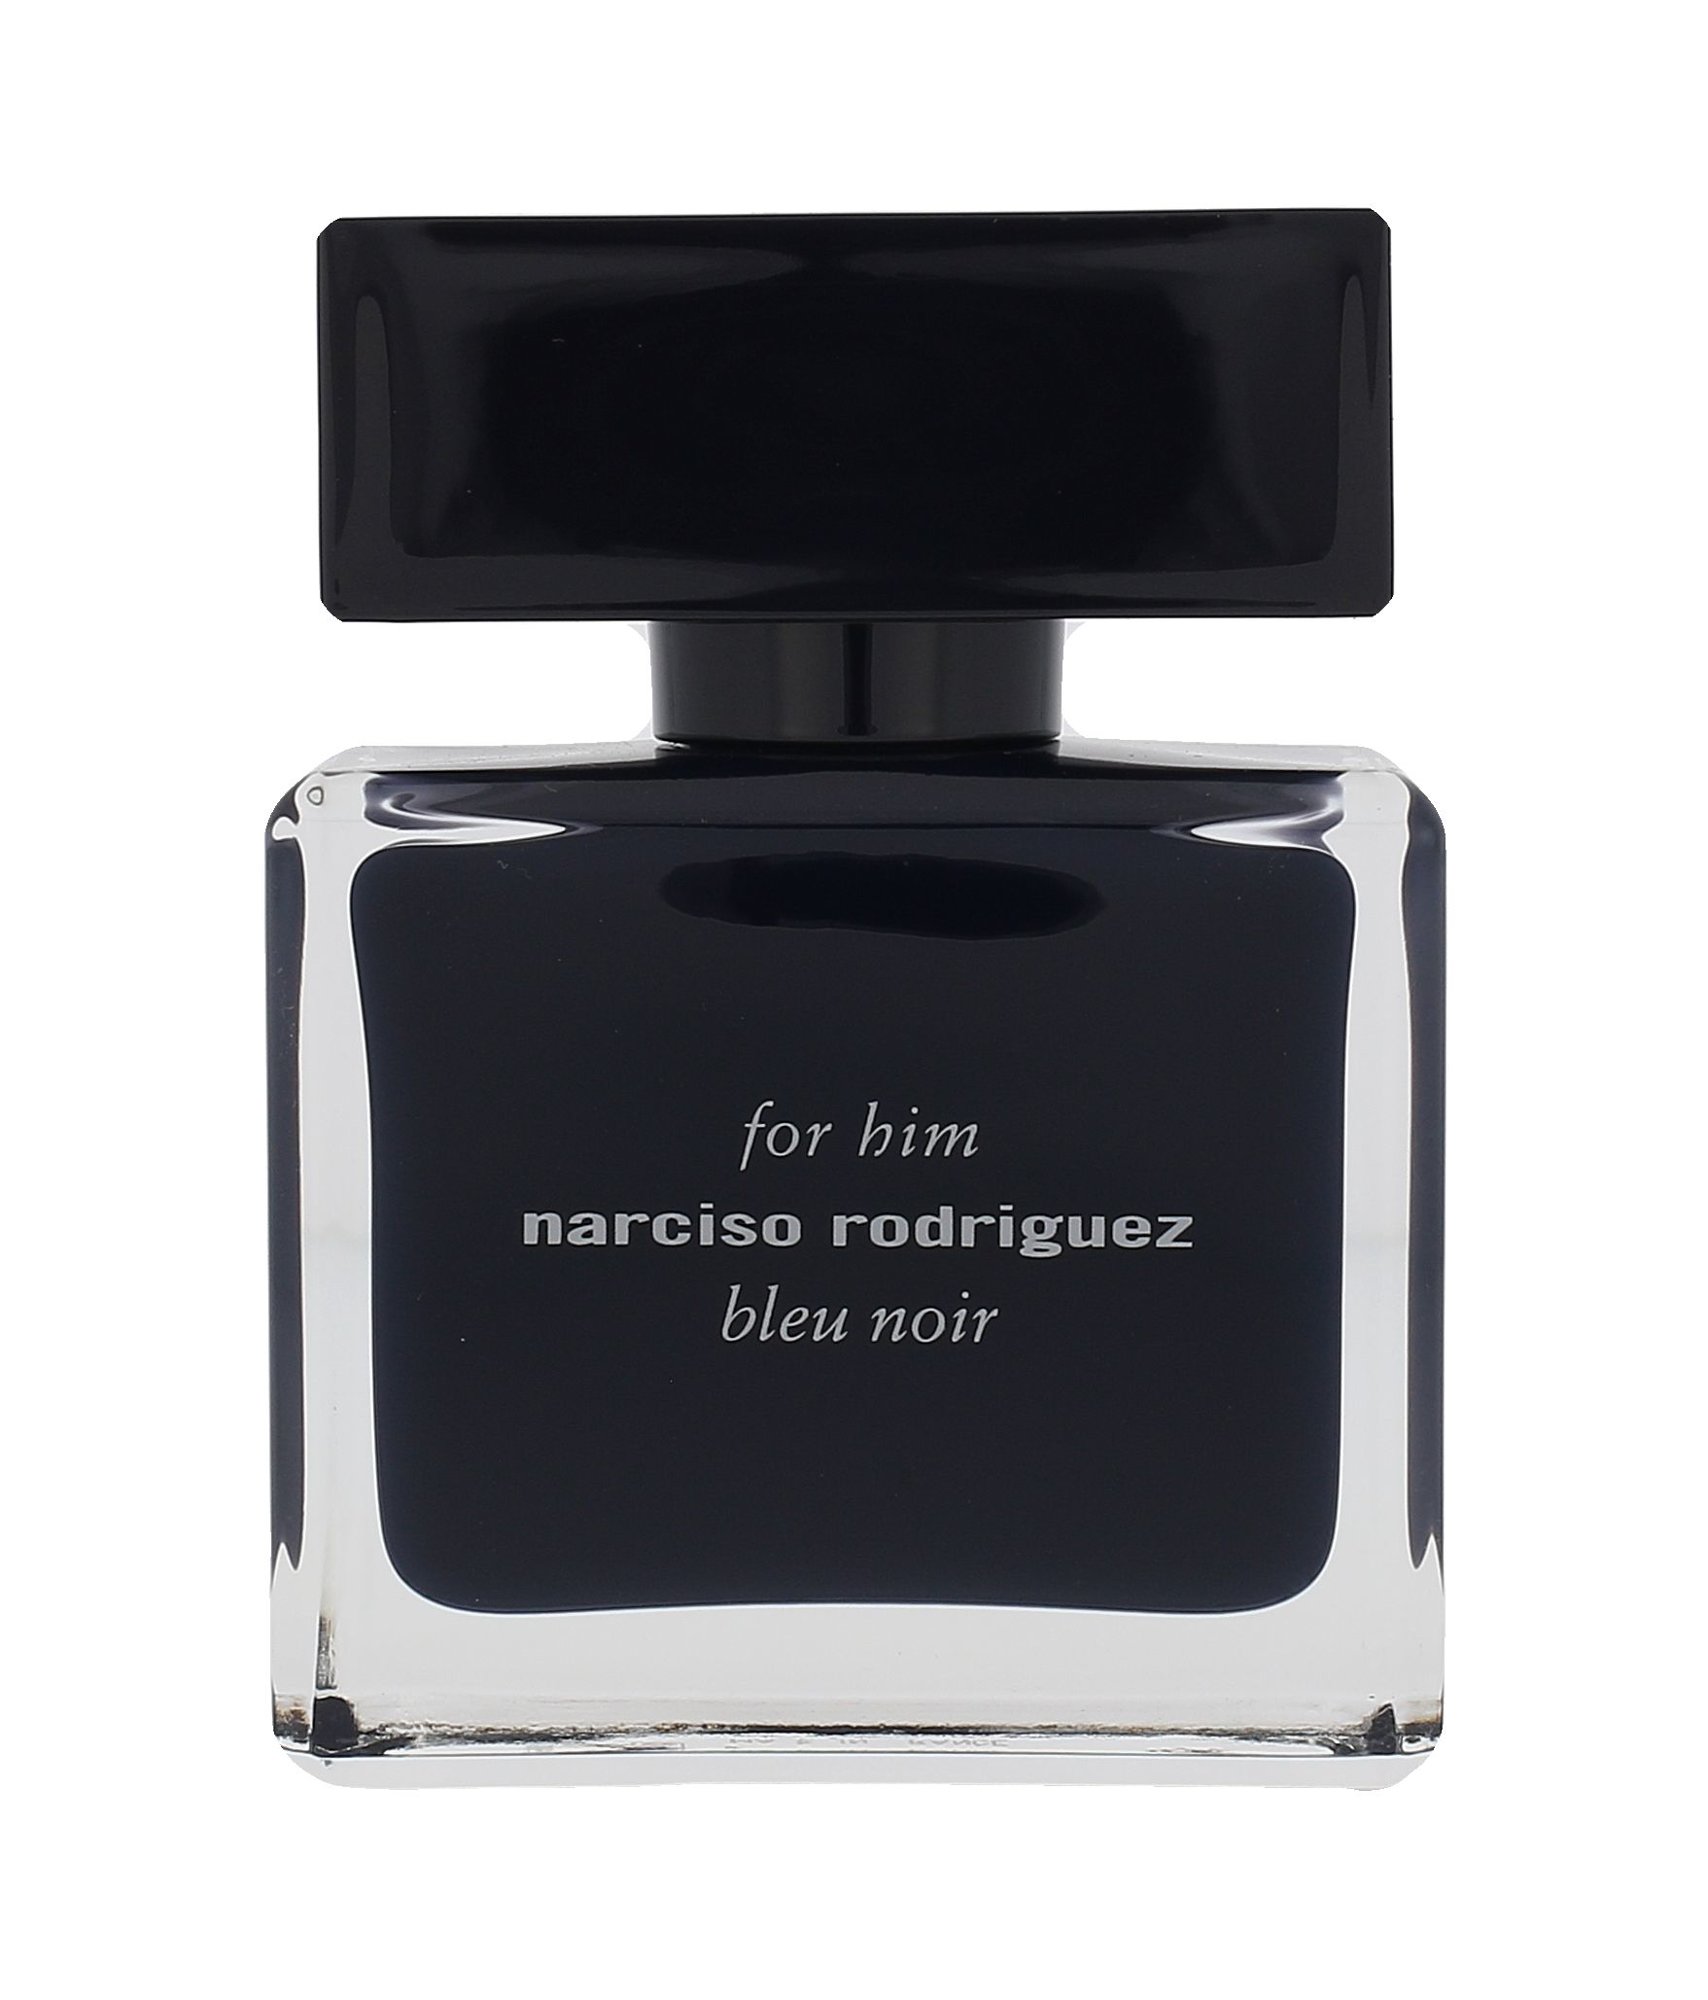 Narciso rodriguez for him bleu. Narciso Rodriguez for him bleu Noir 2011. Narciso Rodriguez for him Blue Noir EDT 50ml. Narciso Rodriguez for him Blue Noir EDP 50ml. Narciso Rodriguez bleu Noir Parfum.